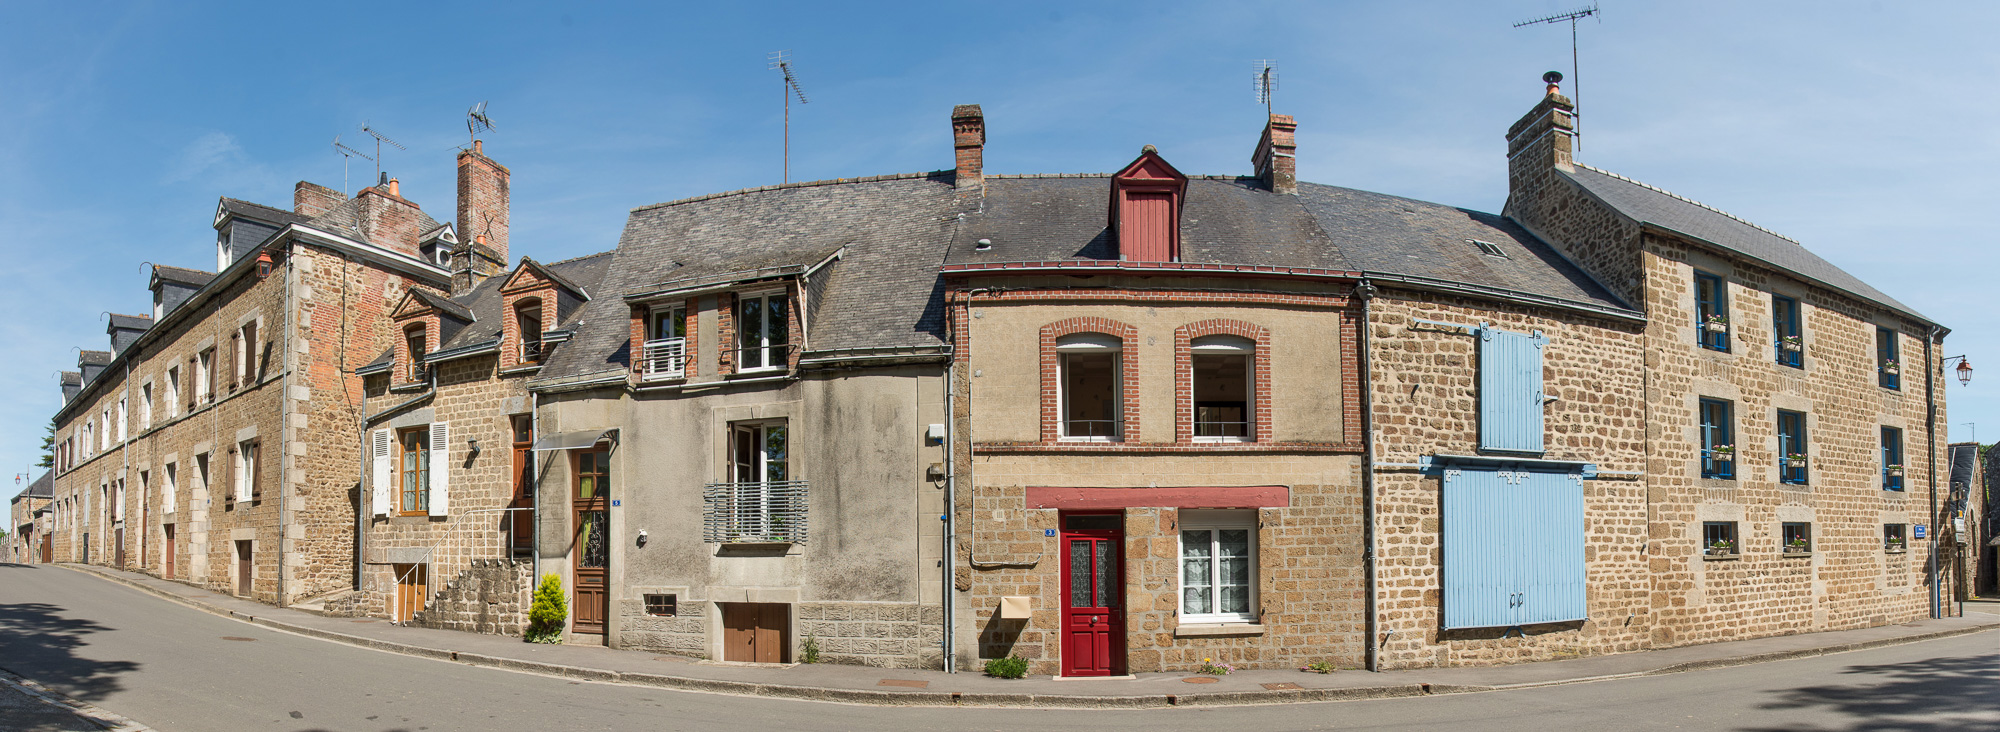 Lassay-les-Châteaux. Maisons à l'angle de la rue de Domfront.